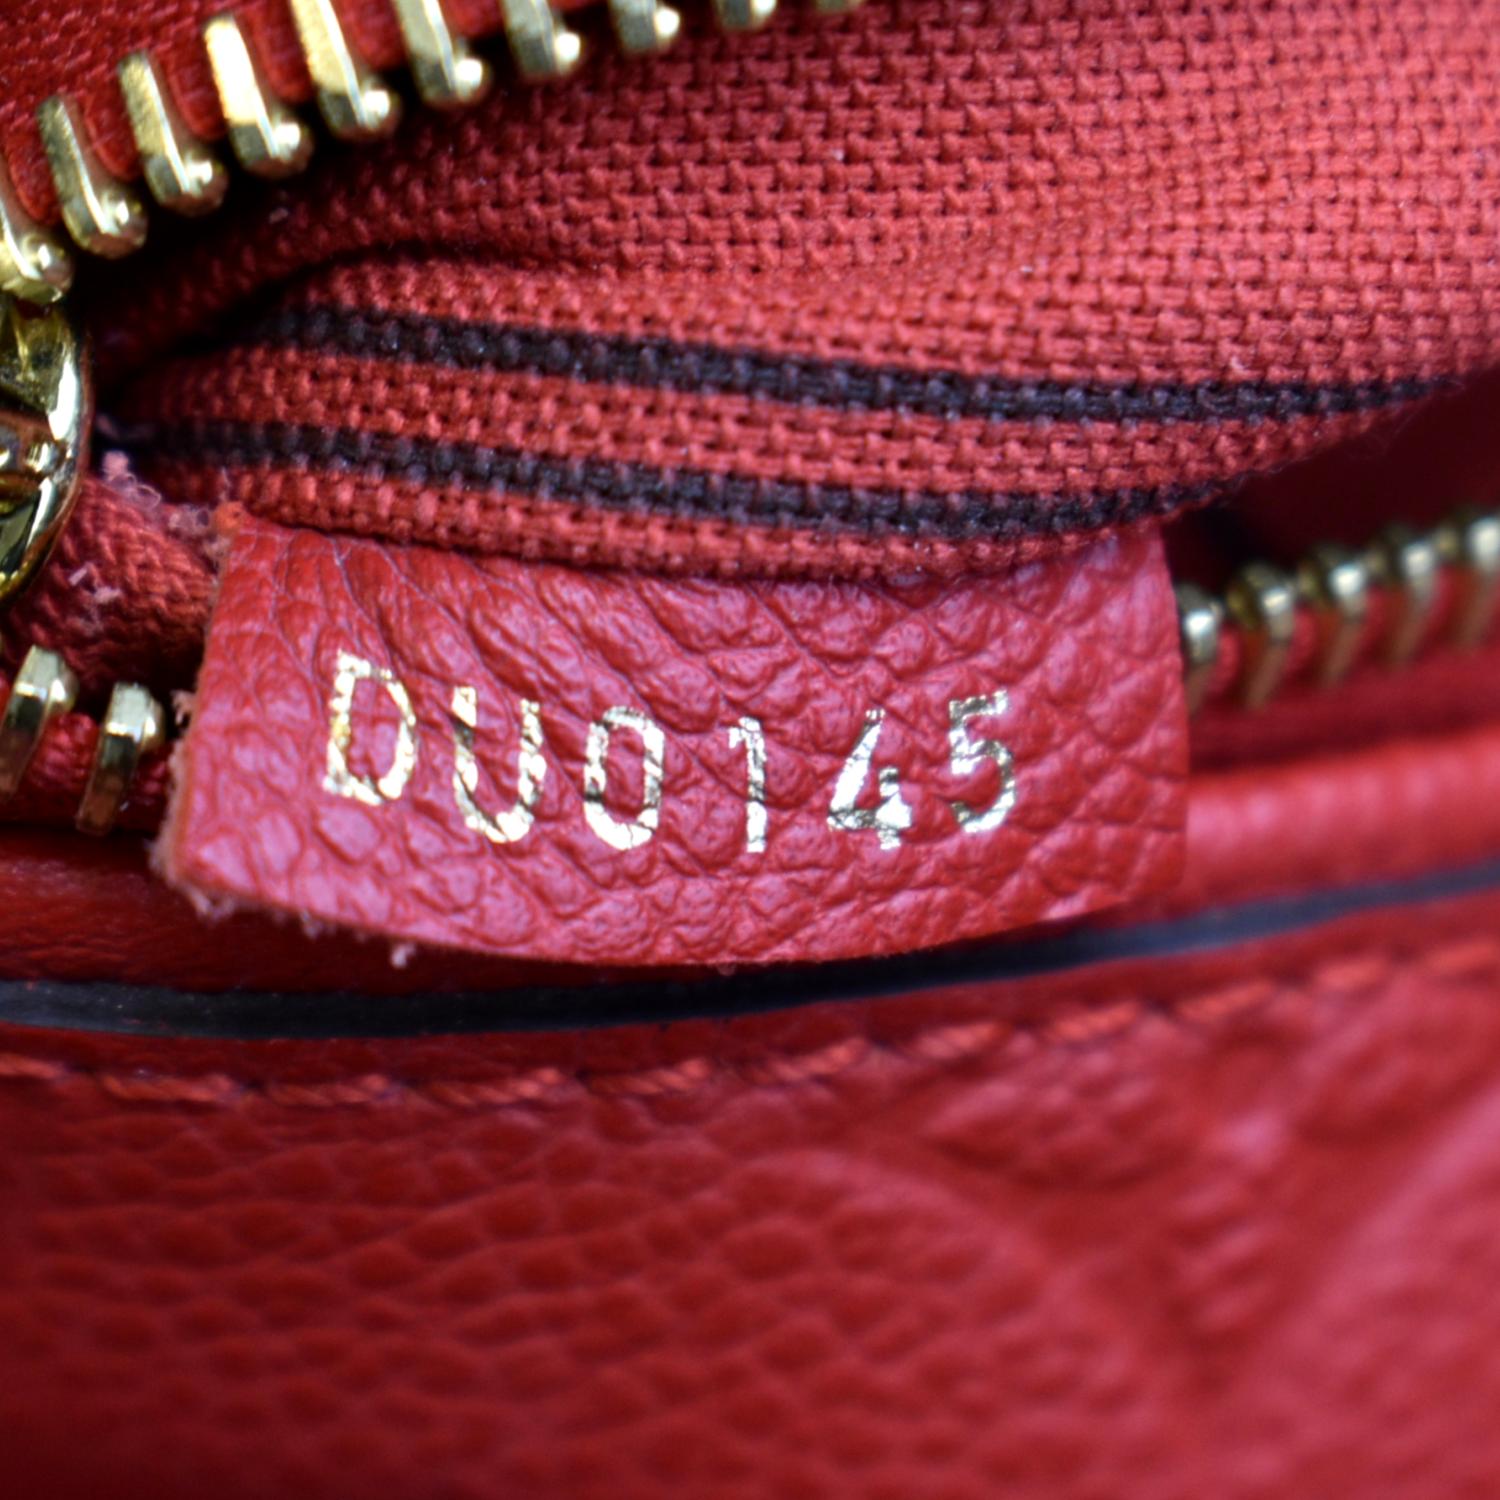 Louis Vuitton Bastille PM Empreinte Shoulder Bag